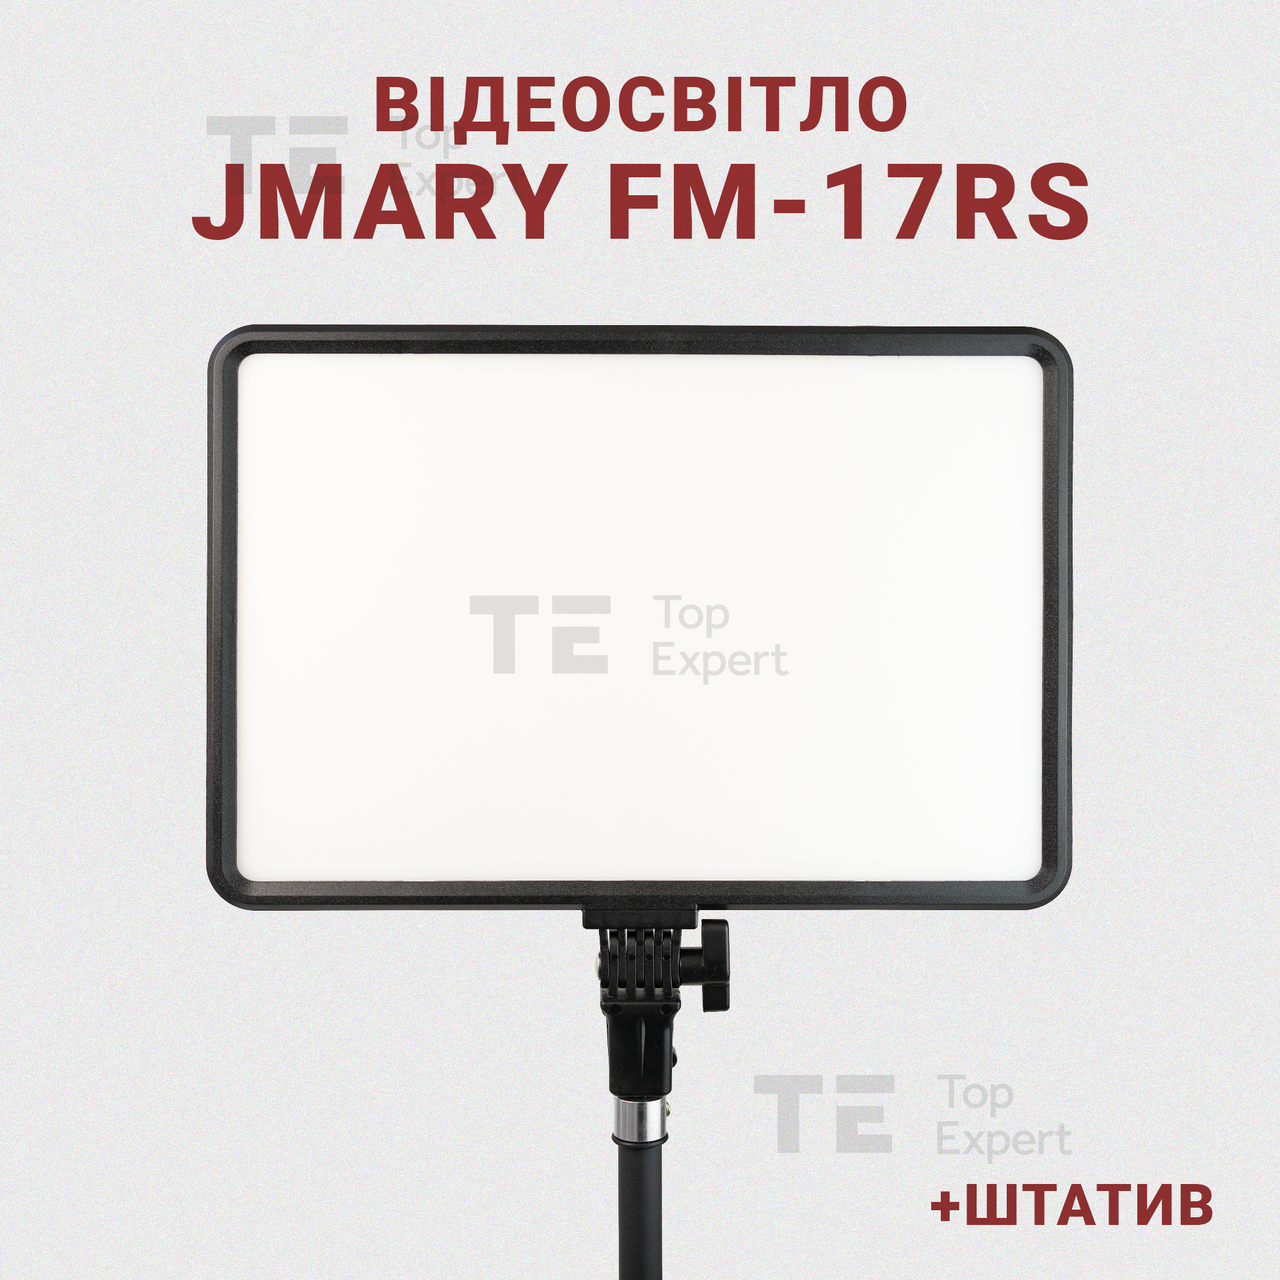 Світлодіодний прожектор Jmary FM-17RS 17 відеосвітло 36W для фото, відео зі штативом 2,1 метр лампа для фону